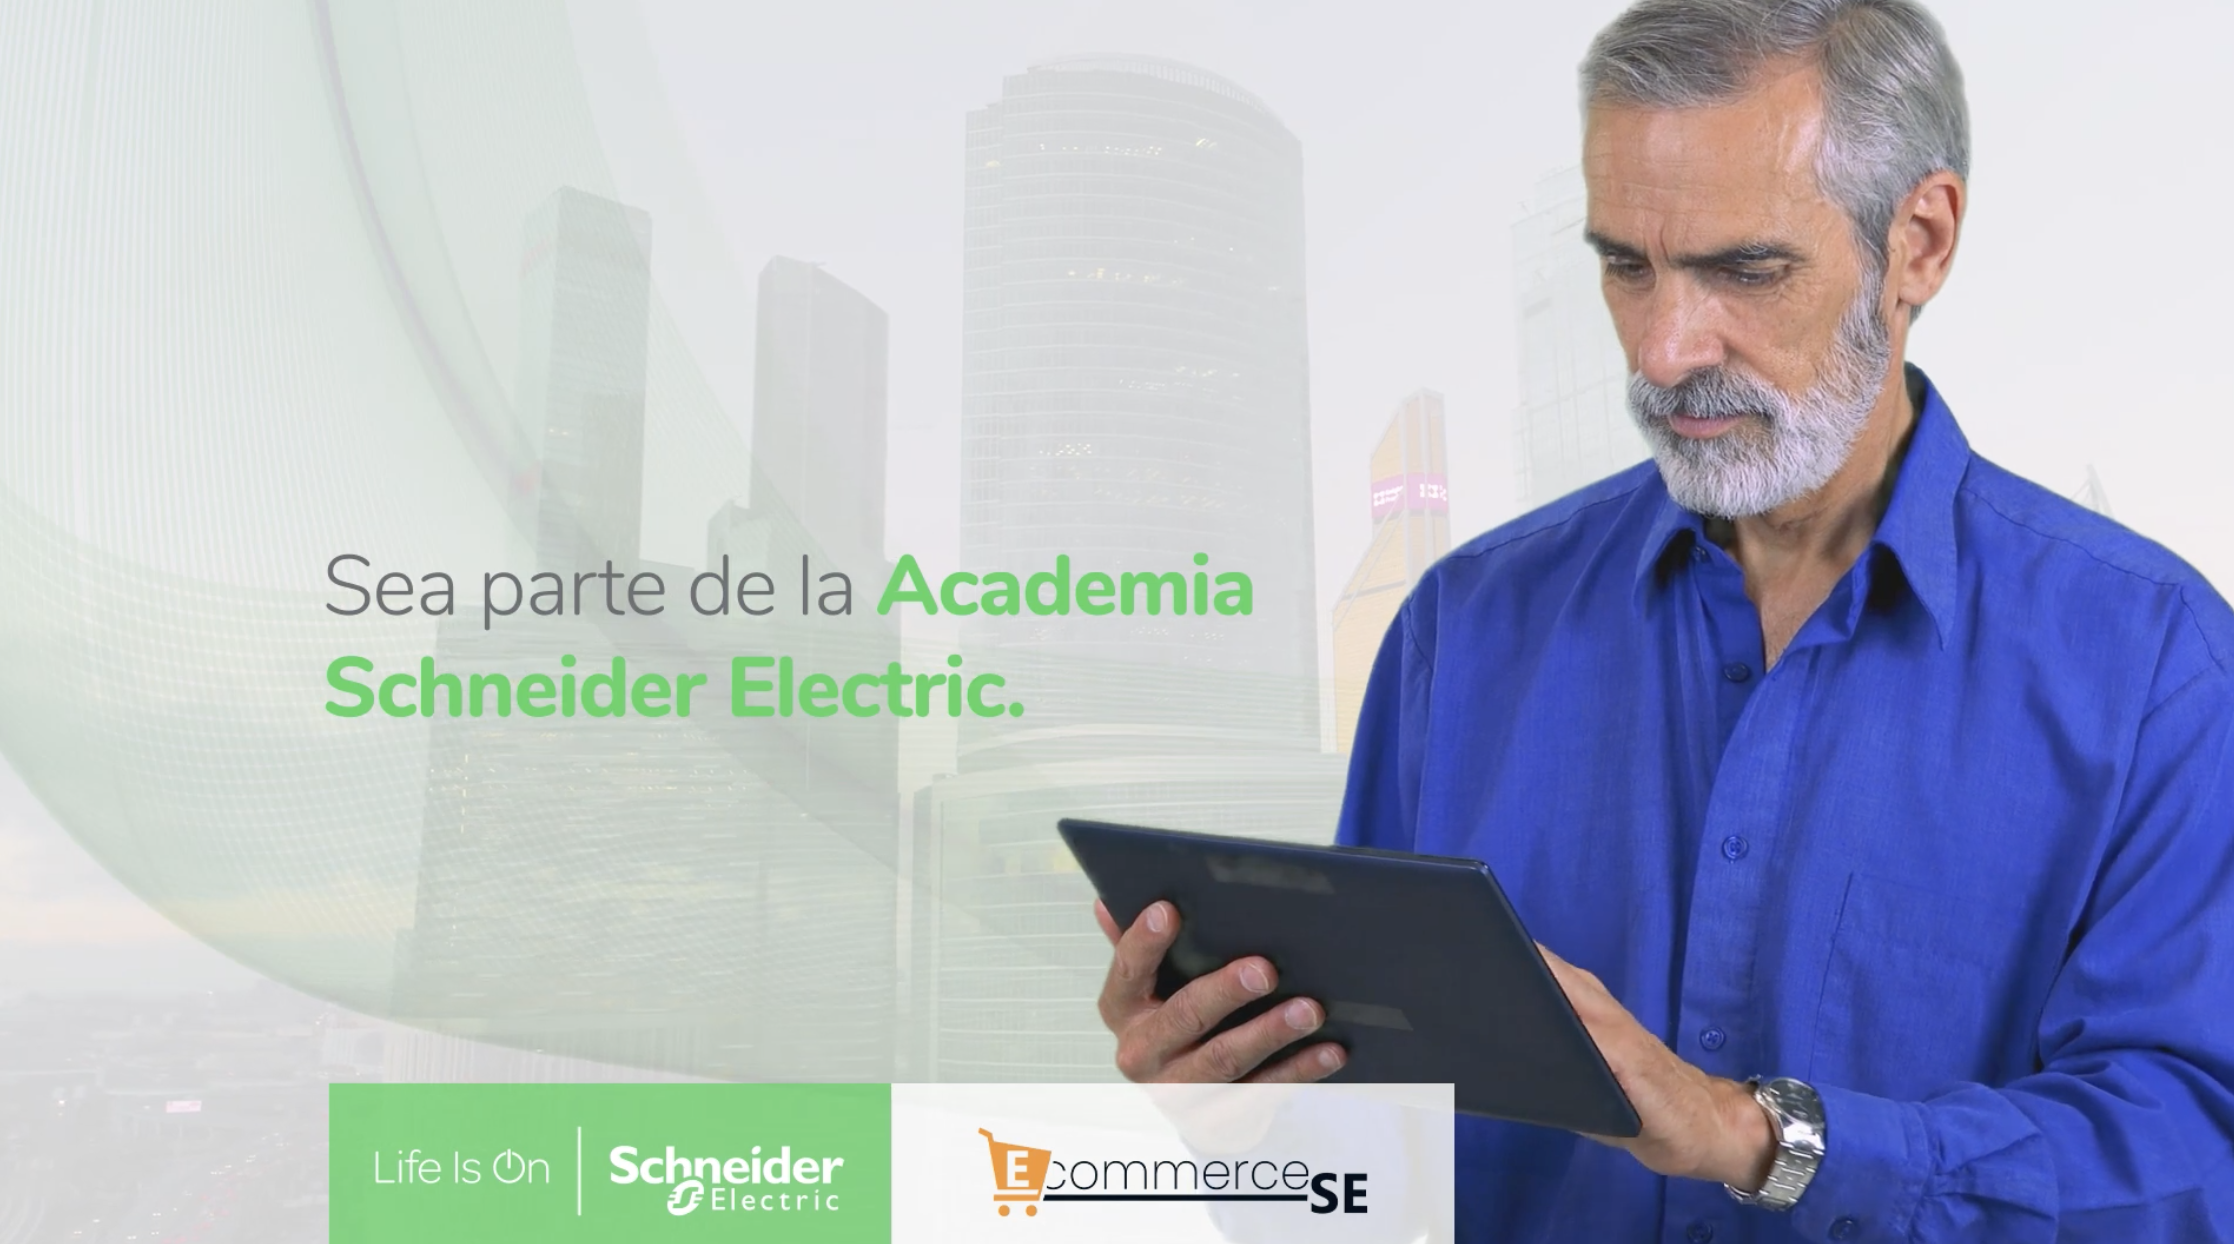 qué es la Academia de Schneider Electric